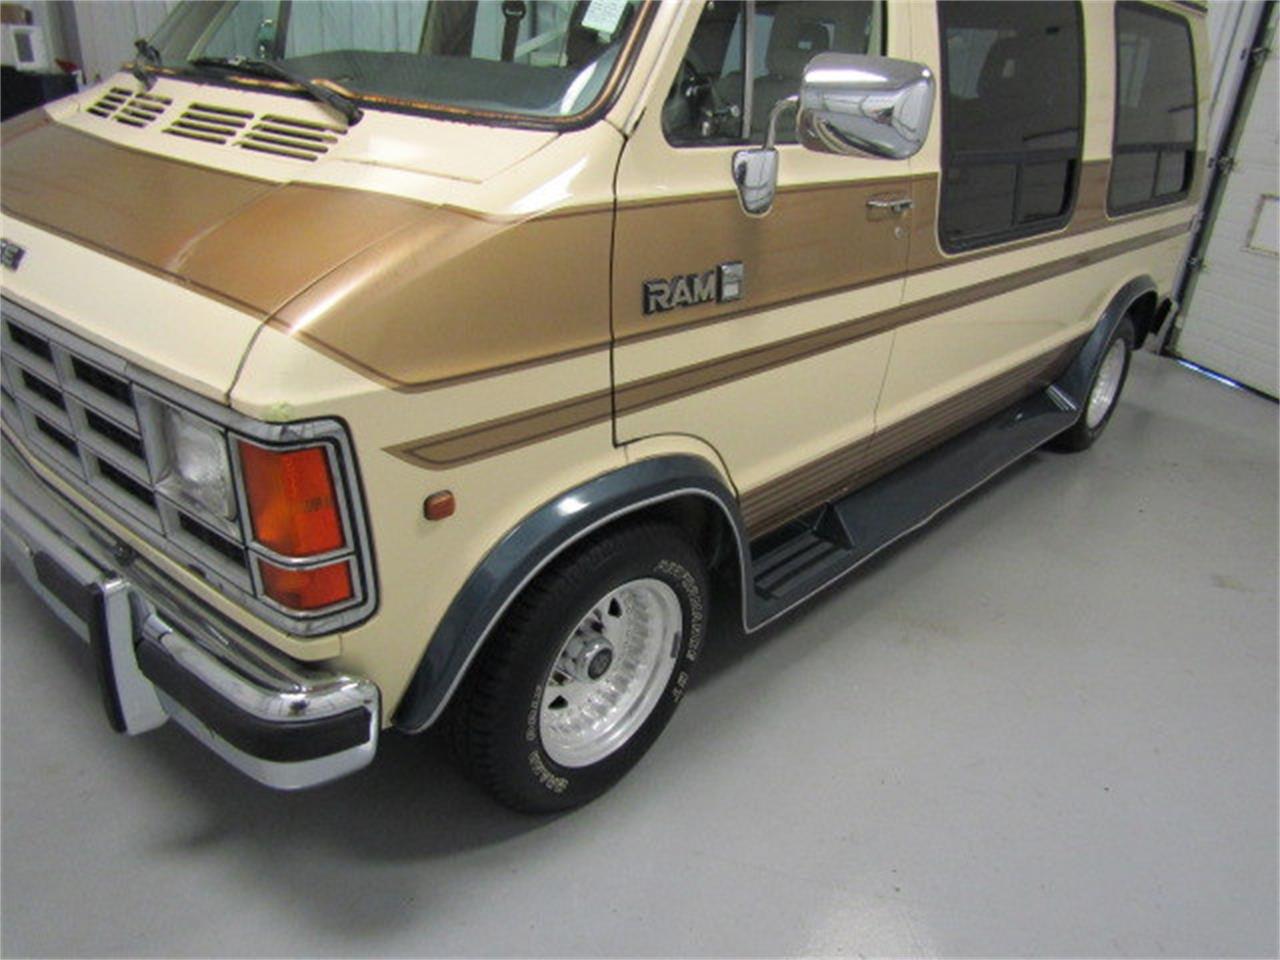 1989 dodge ram van for sale